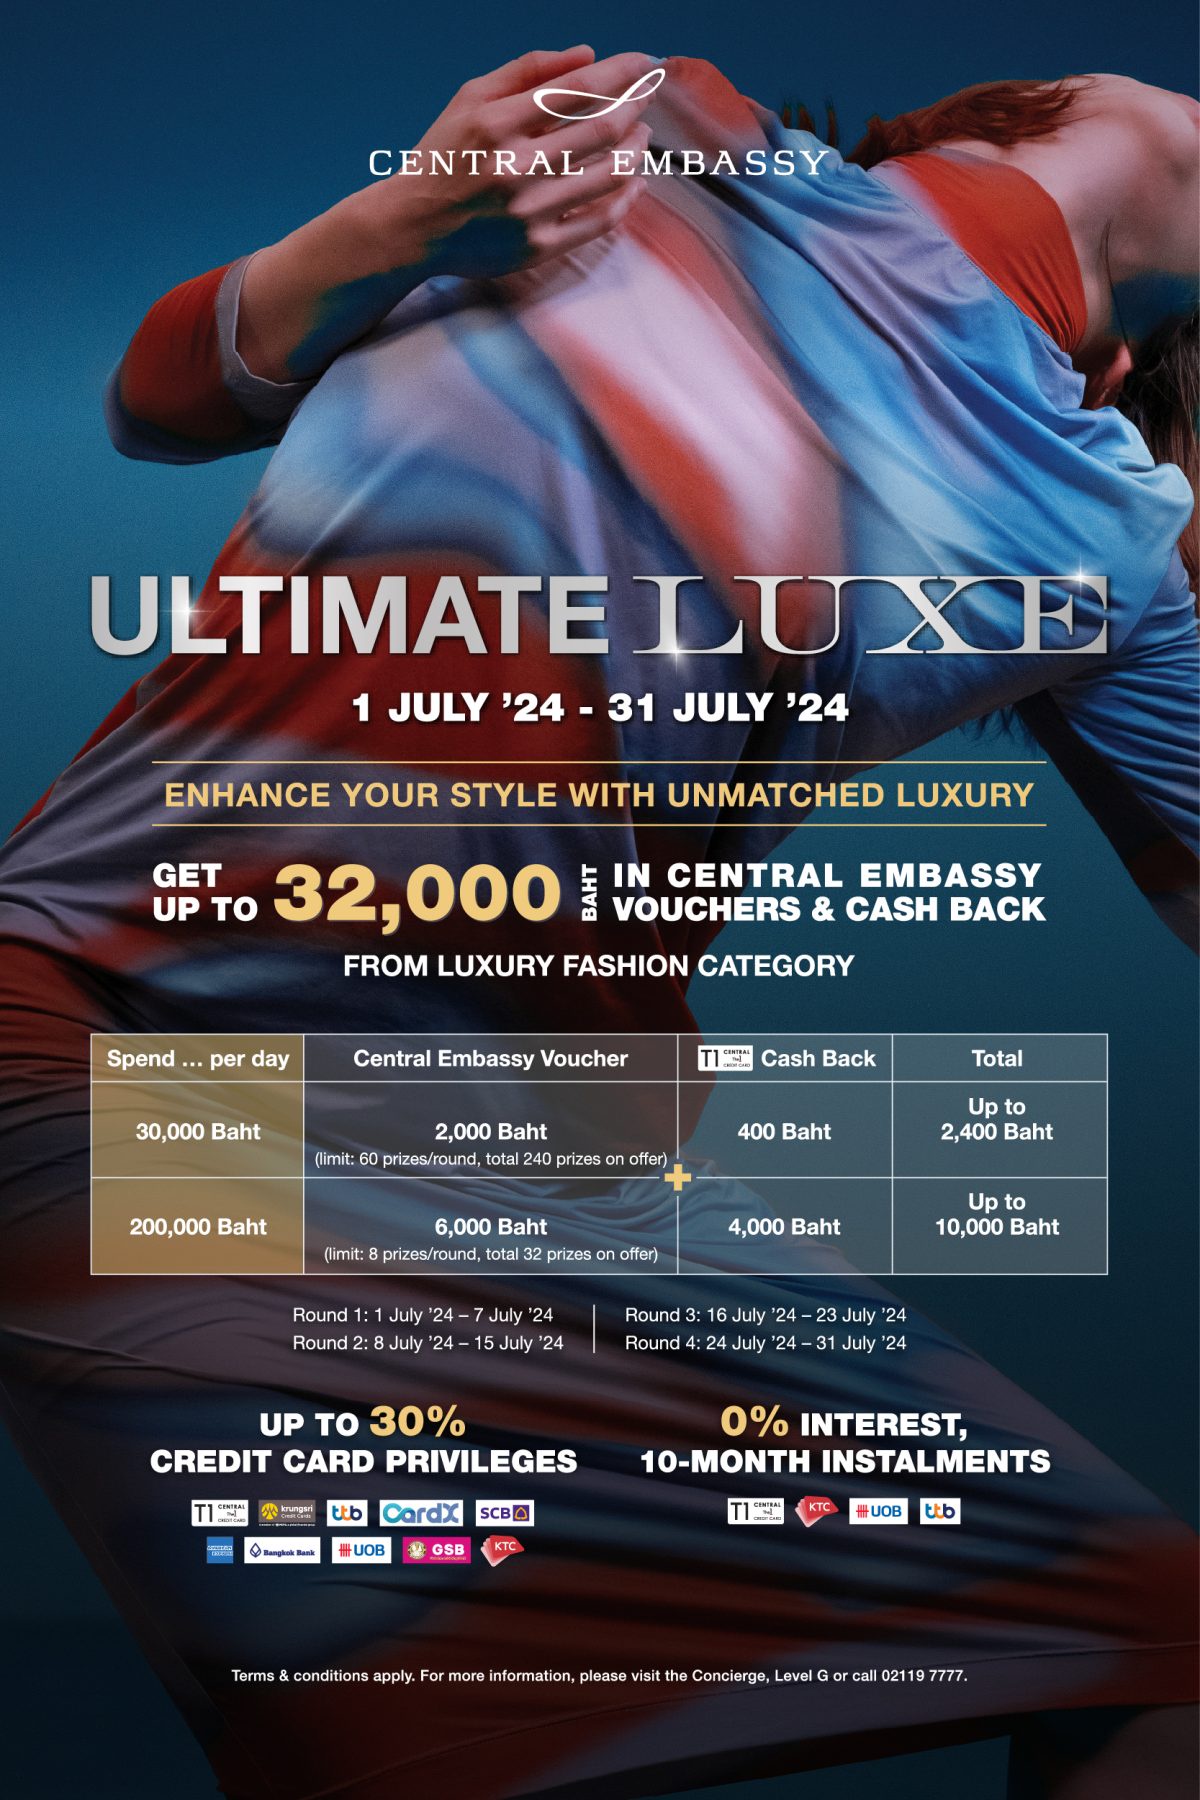 เซ็นทรัล เอ็มบาสซี จัดรายการ Ultimate Luxe 2024 ครั้งที่ 4 ชวนช้อปแฟชั่นลักชัวรี่ระดับโลก ที่ห้ามพลาด! ตั้งแต่วันที่ 1 - 31 ก.ค.